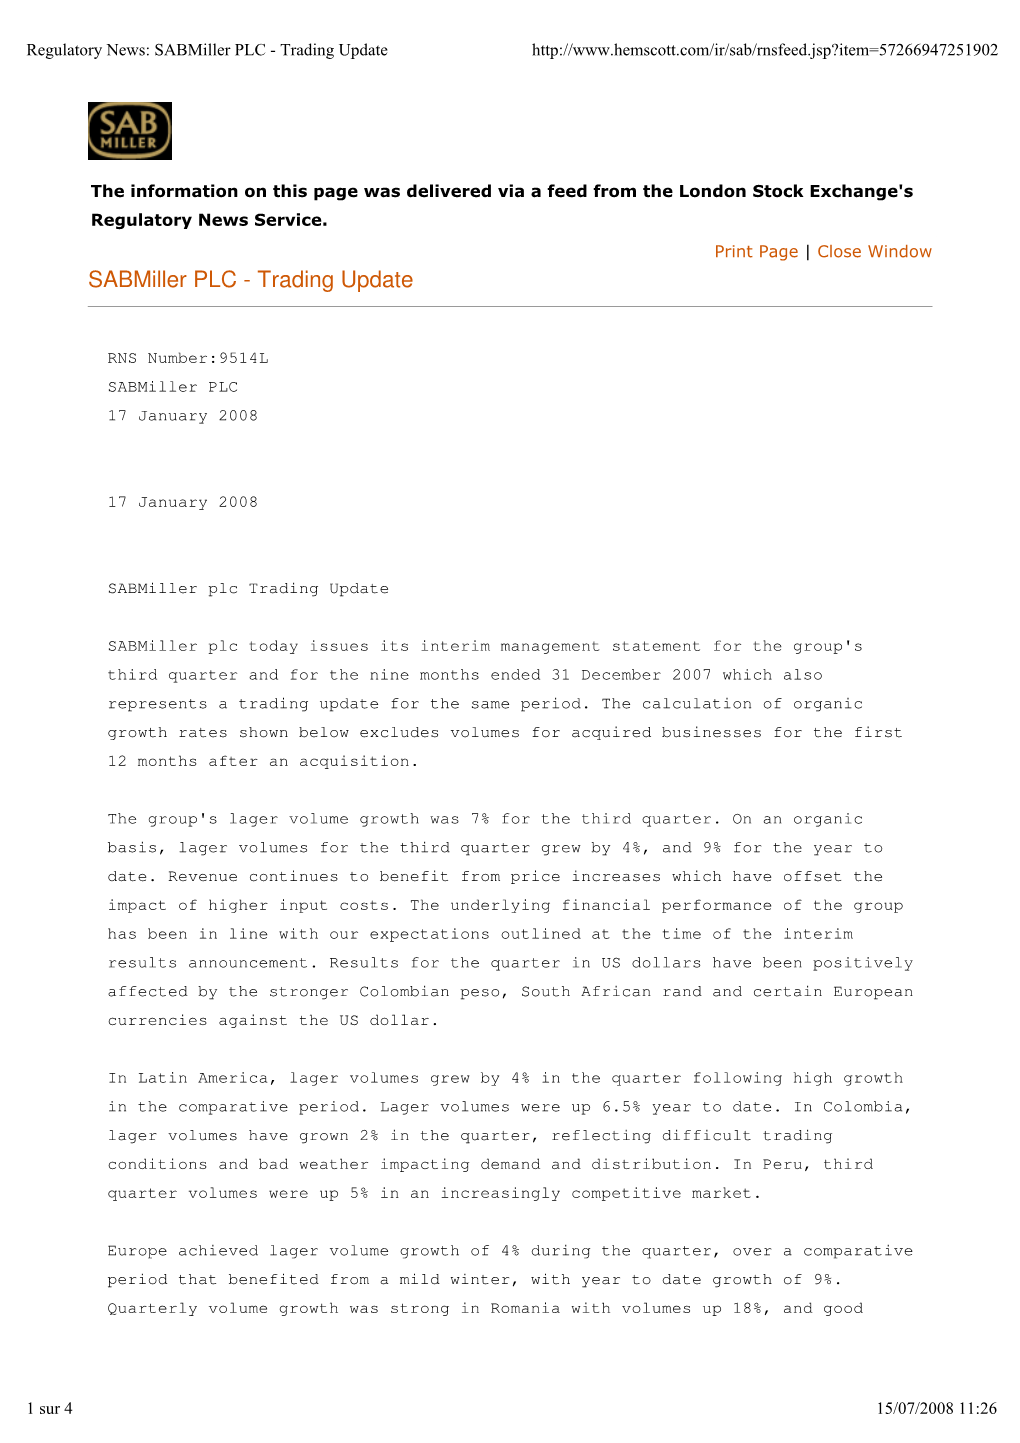 Sabmiller PLC - Trading Update